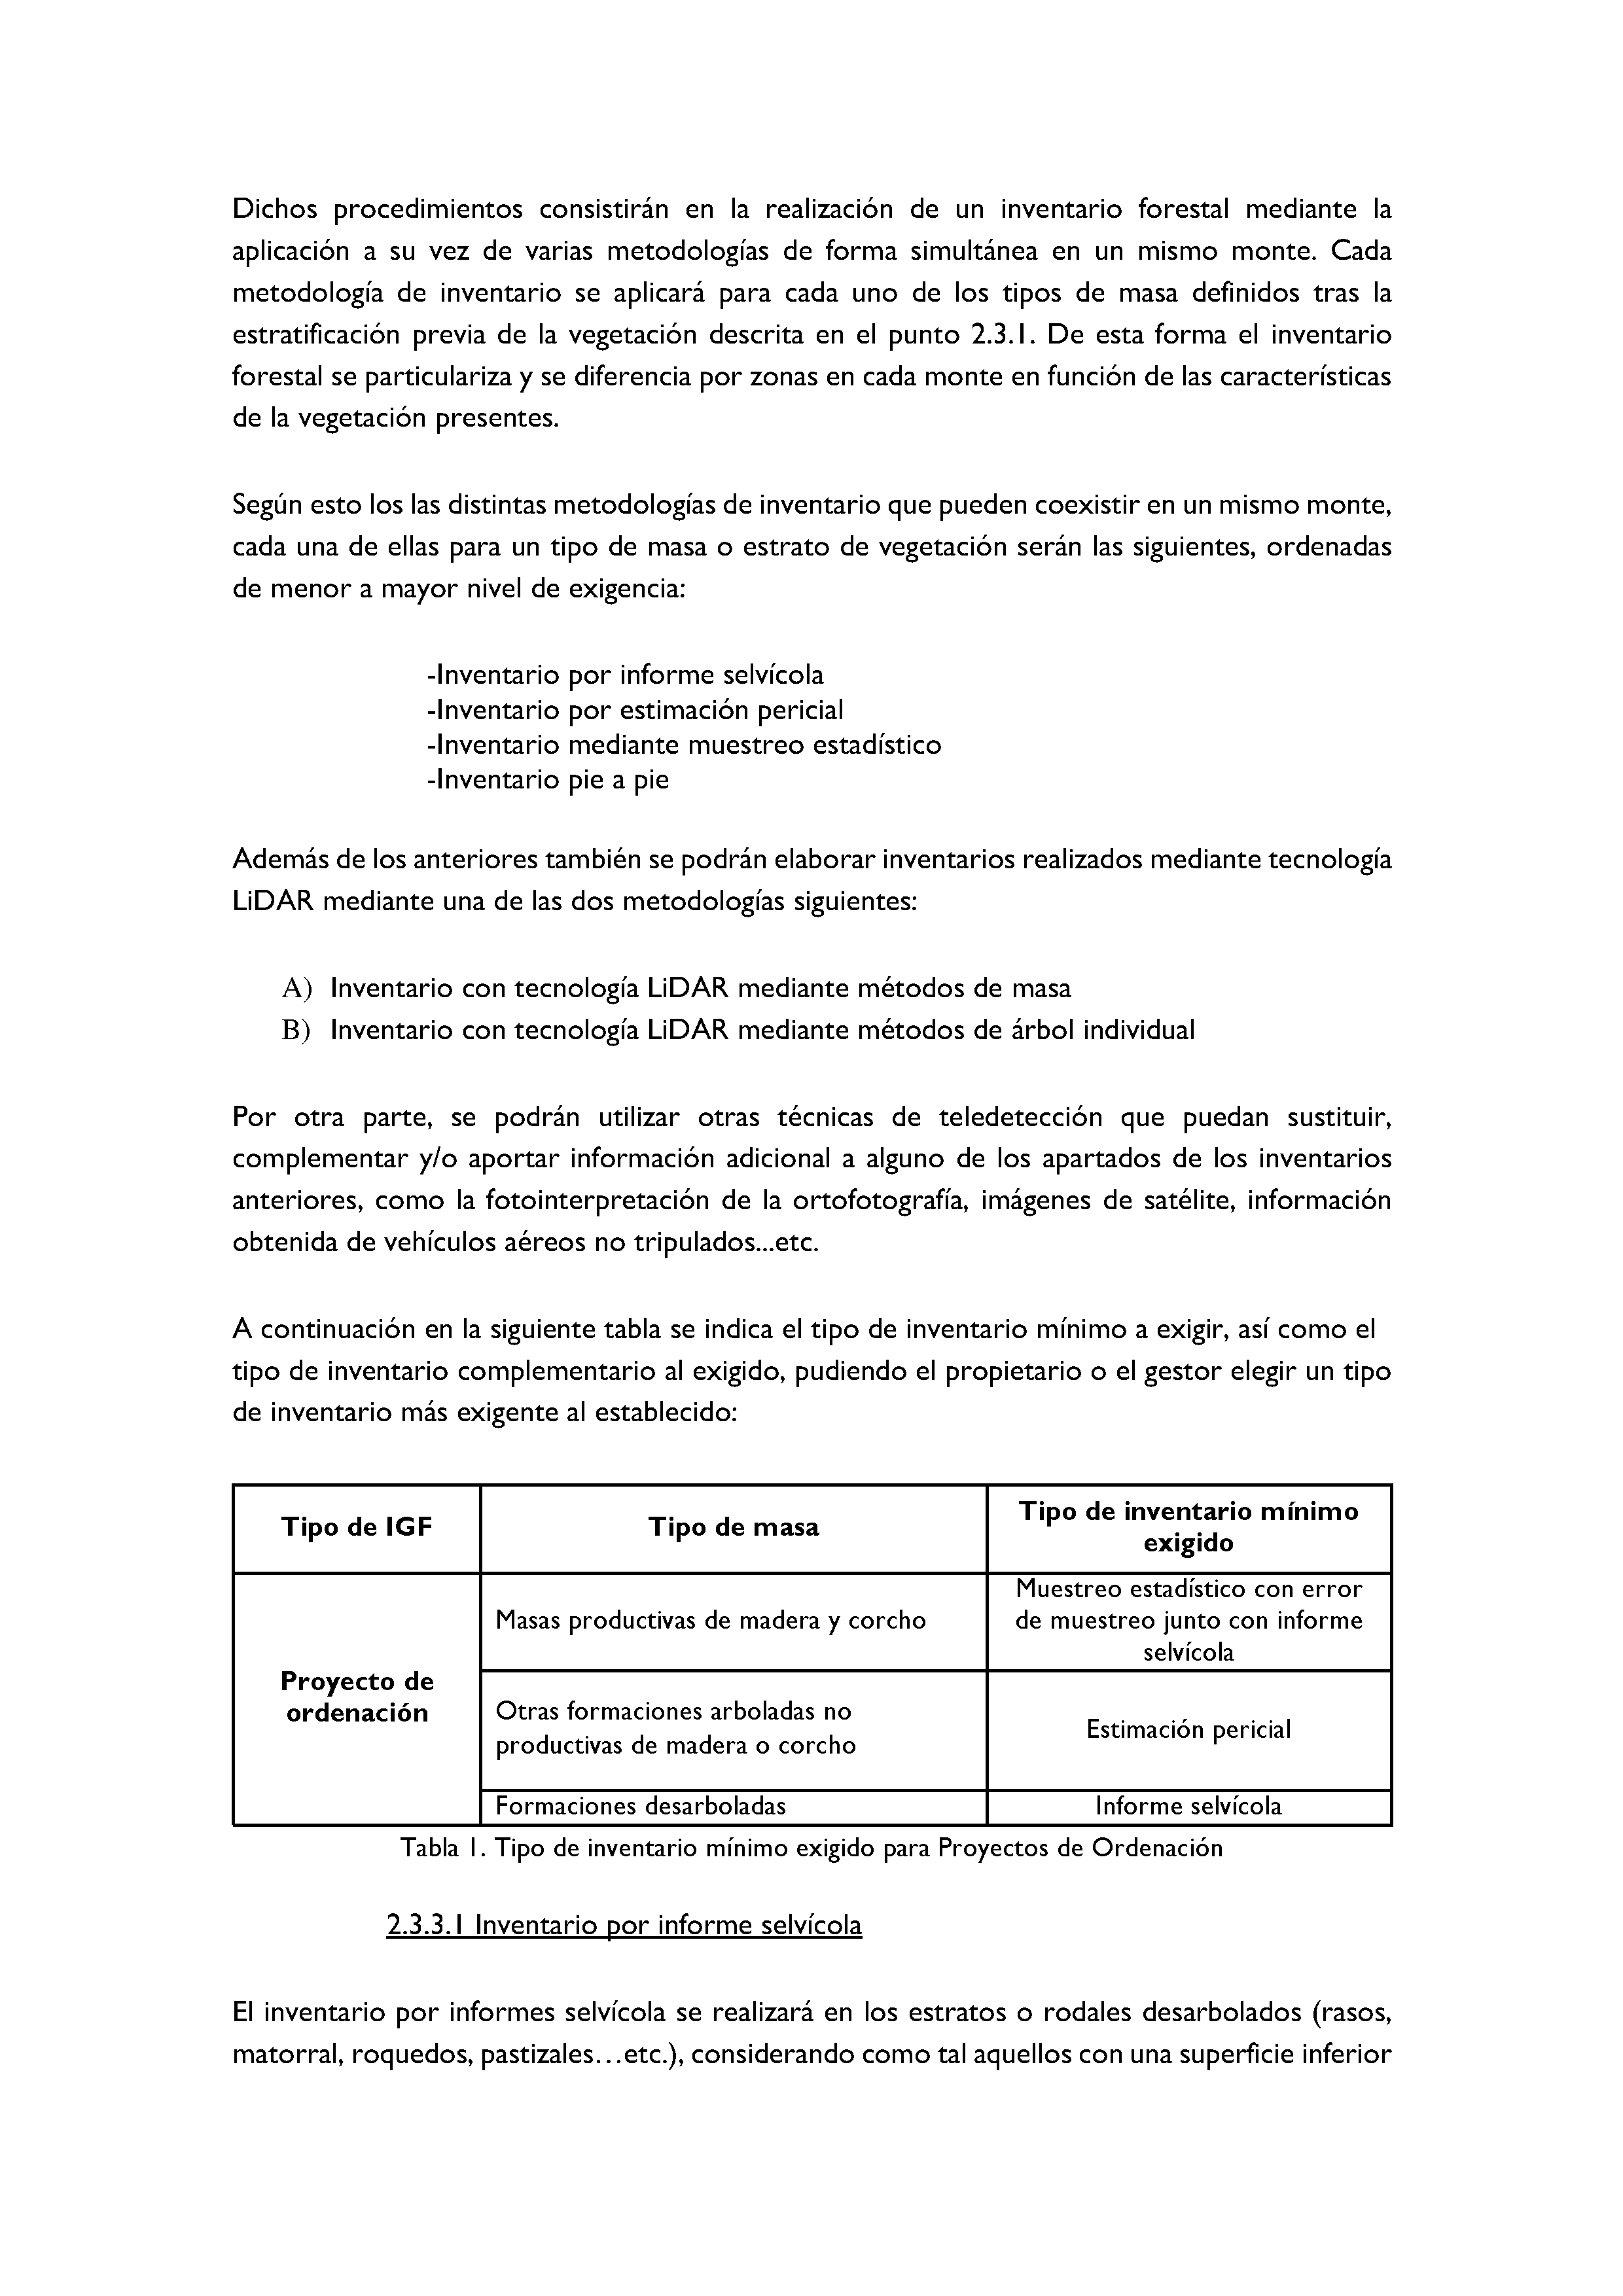 ANEXO - INSTRUCCIONES DE ORDENACIÓN DE LOS PROYECTOS DE ORDENACIÓN DE MONTES Pag 9